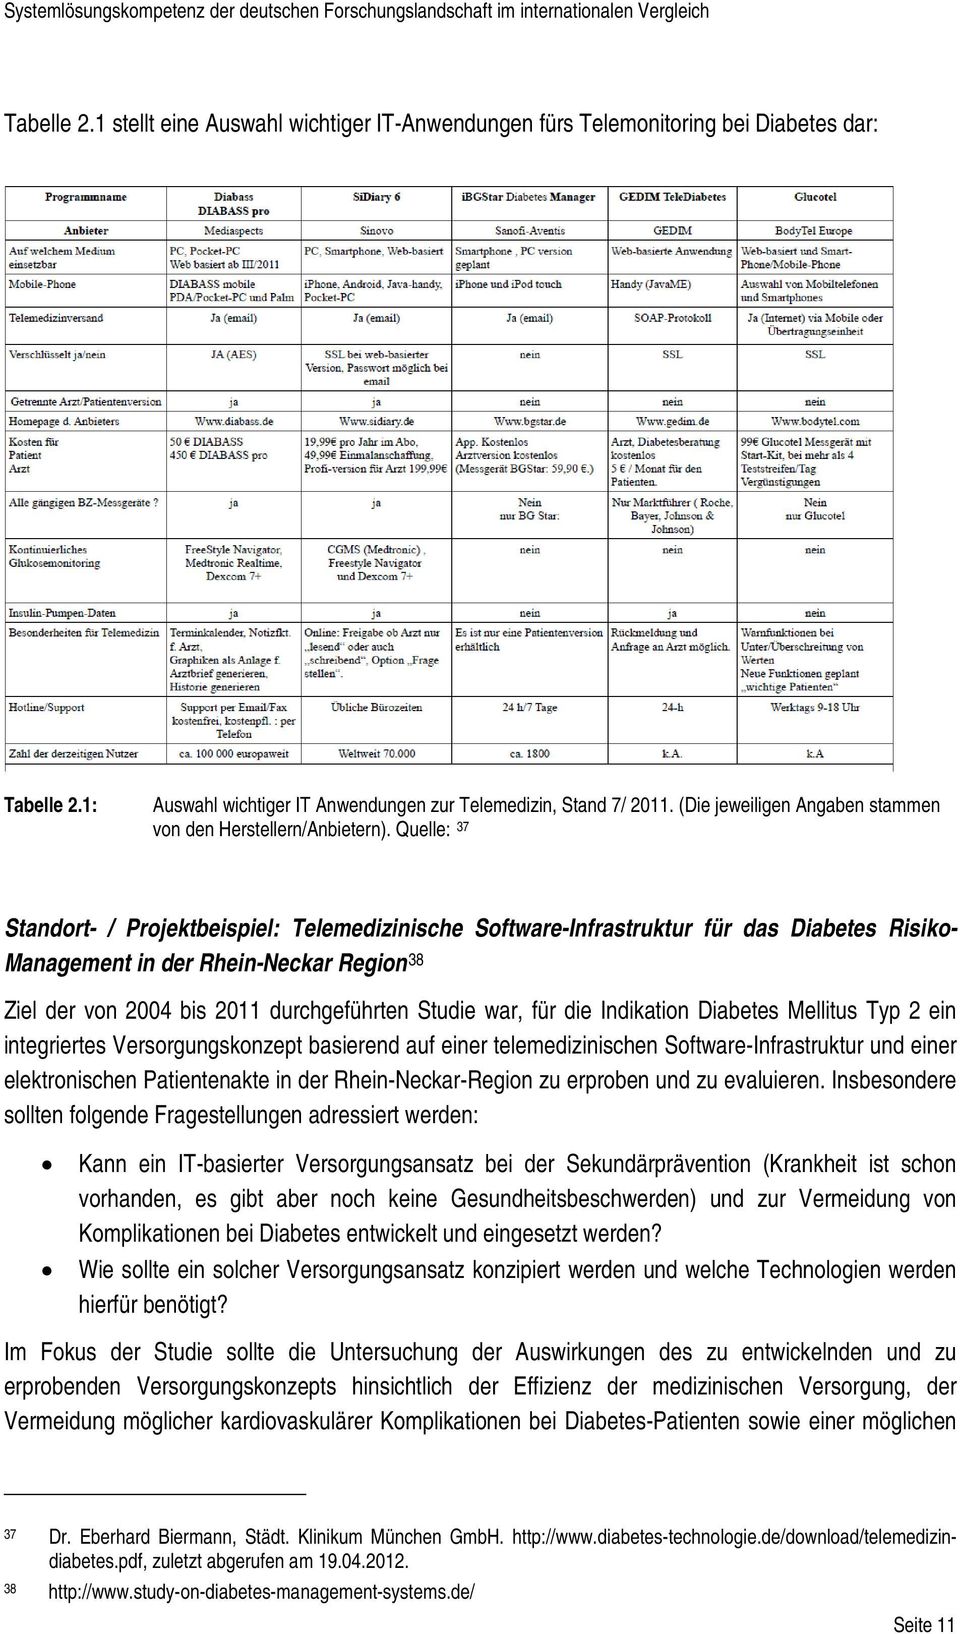 Quelle: 37 Standort- / Projektbeispiel: Telemedizinische Software-Infrastruktur für das Diabetes Risiko- Management in der Rhein-Neckar Region 38 Ziel der von 2004 bis 2011 durchgeführten Studie war,